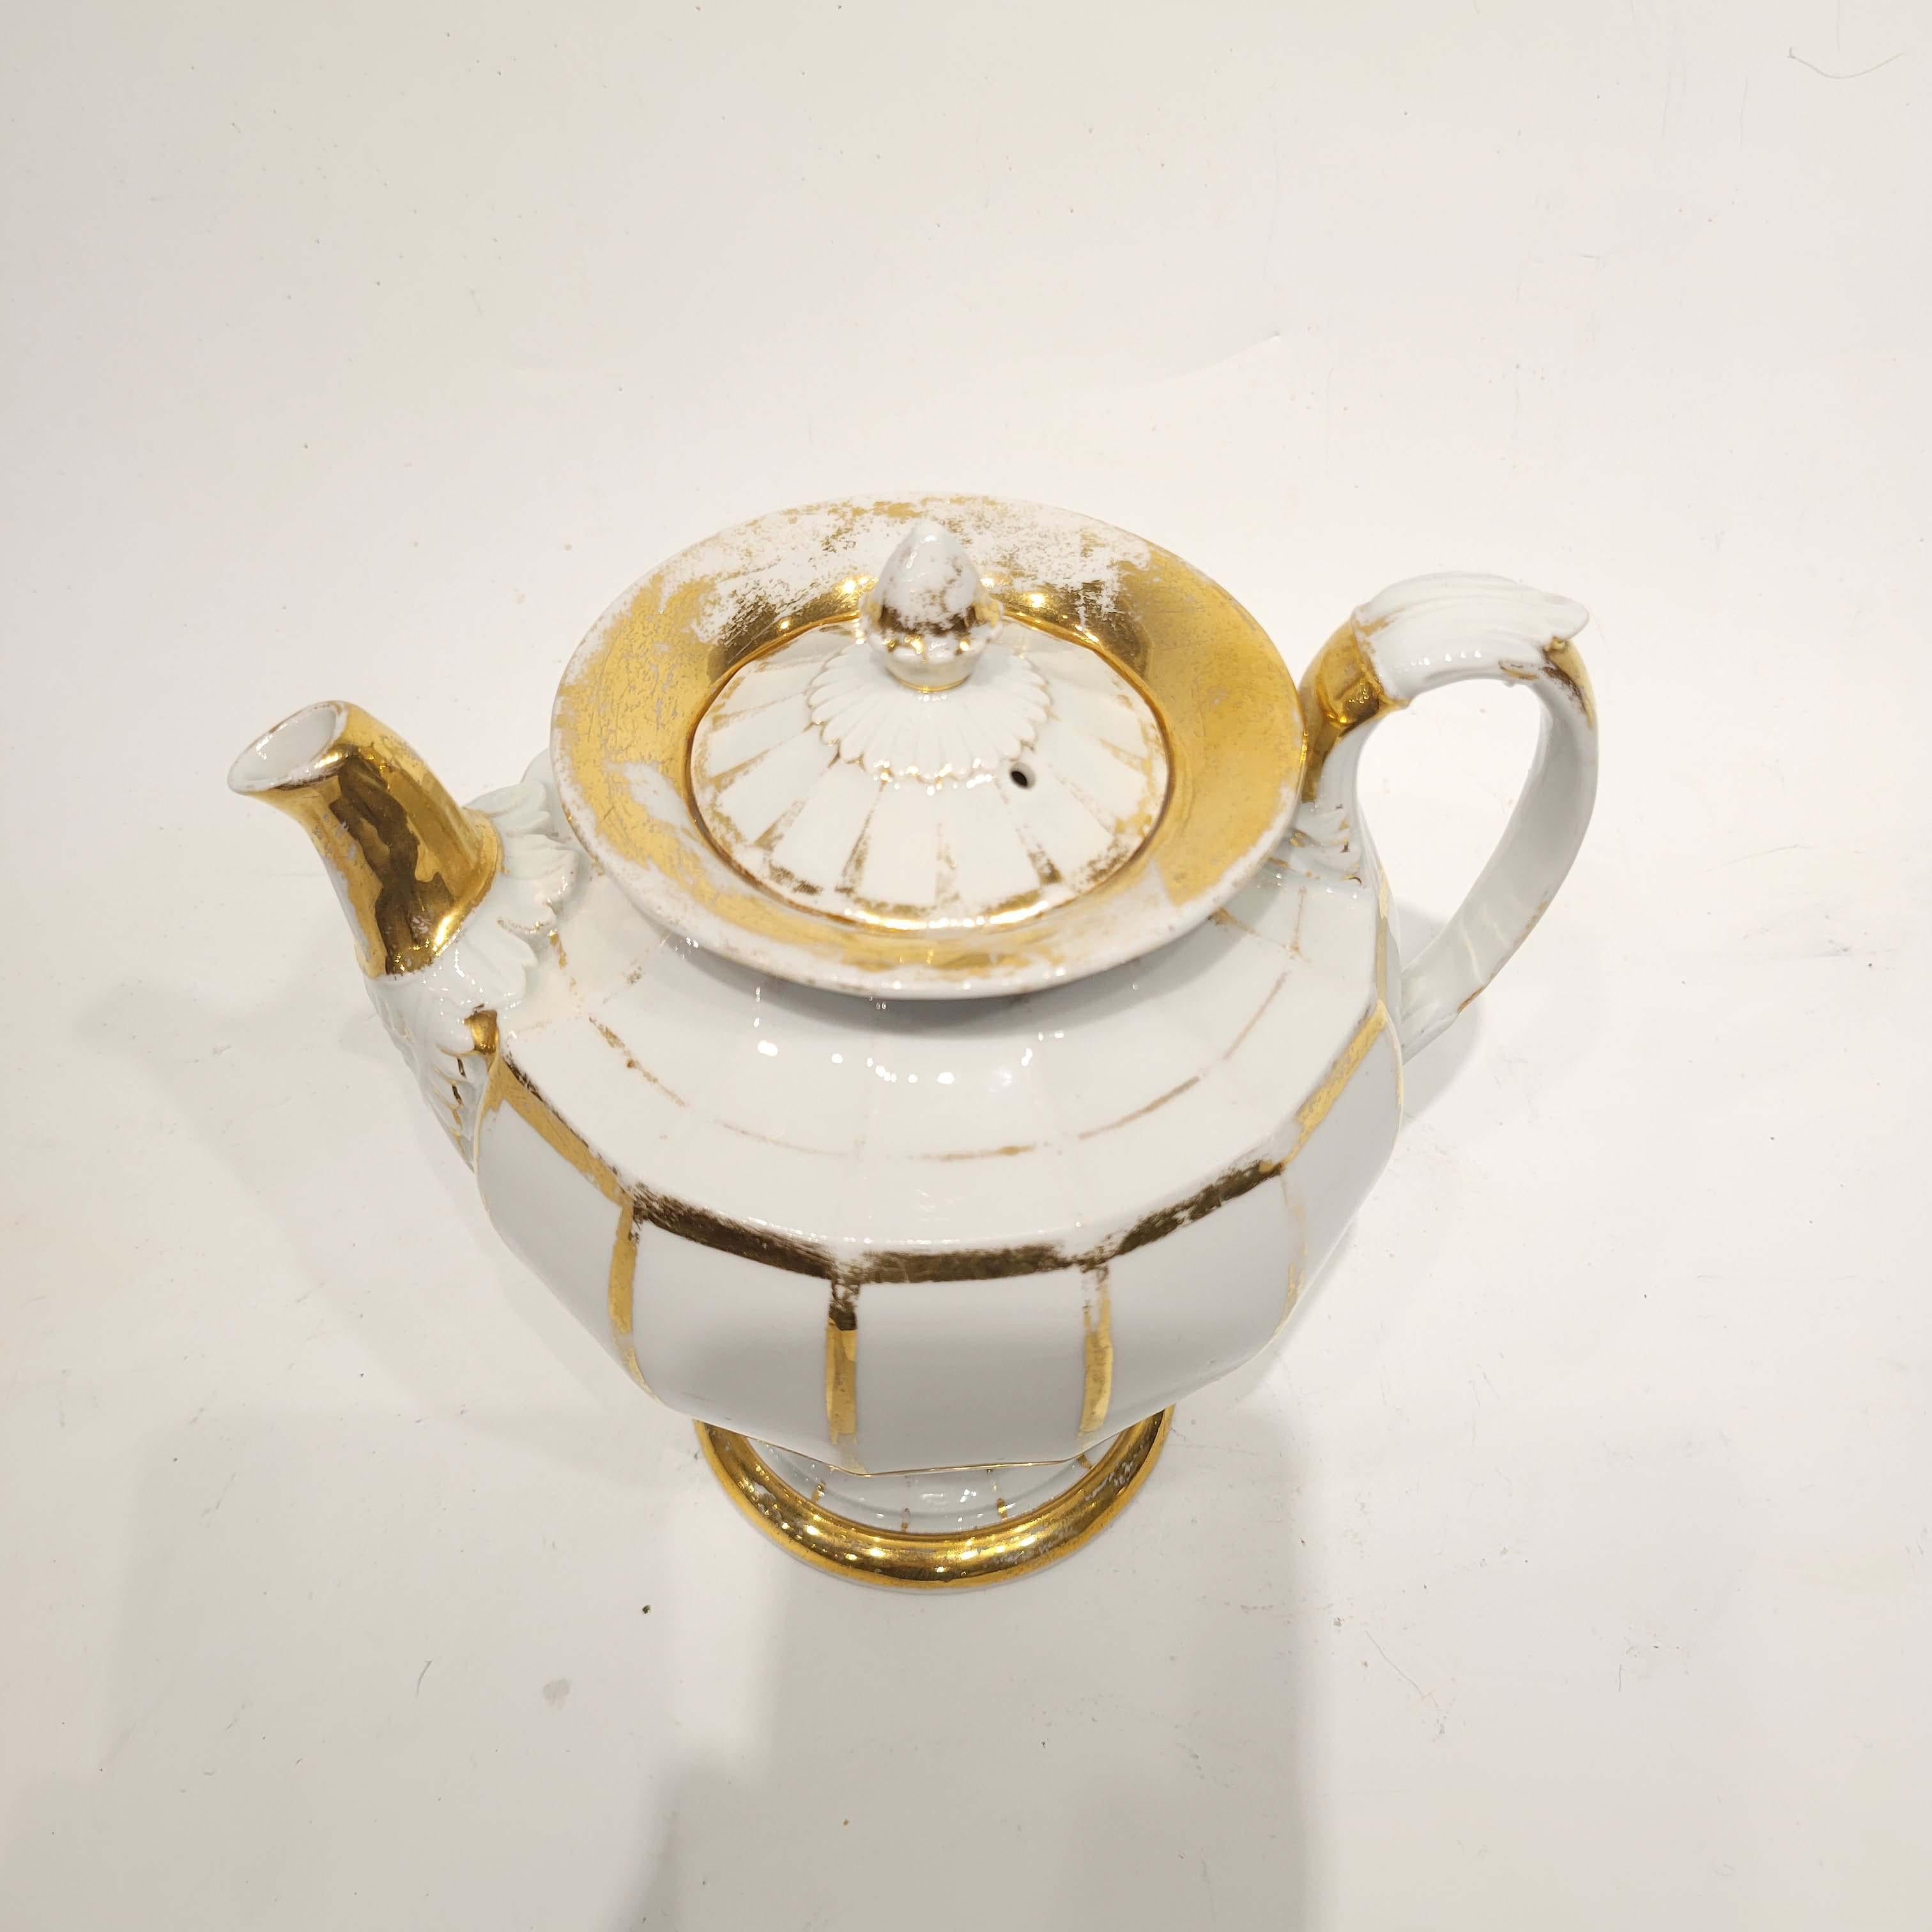 Empire Marcolini Period Meissen Porcelain Coffee Pot, circa 1810